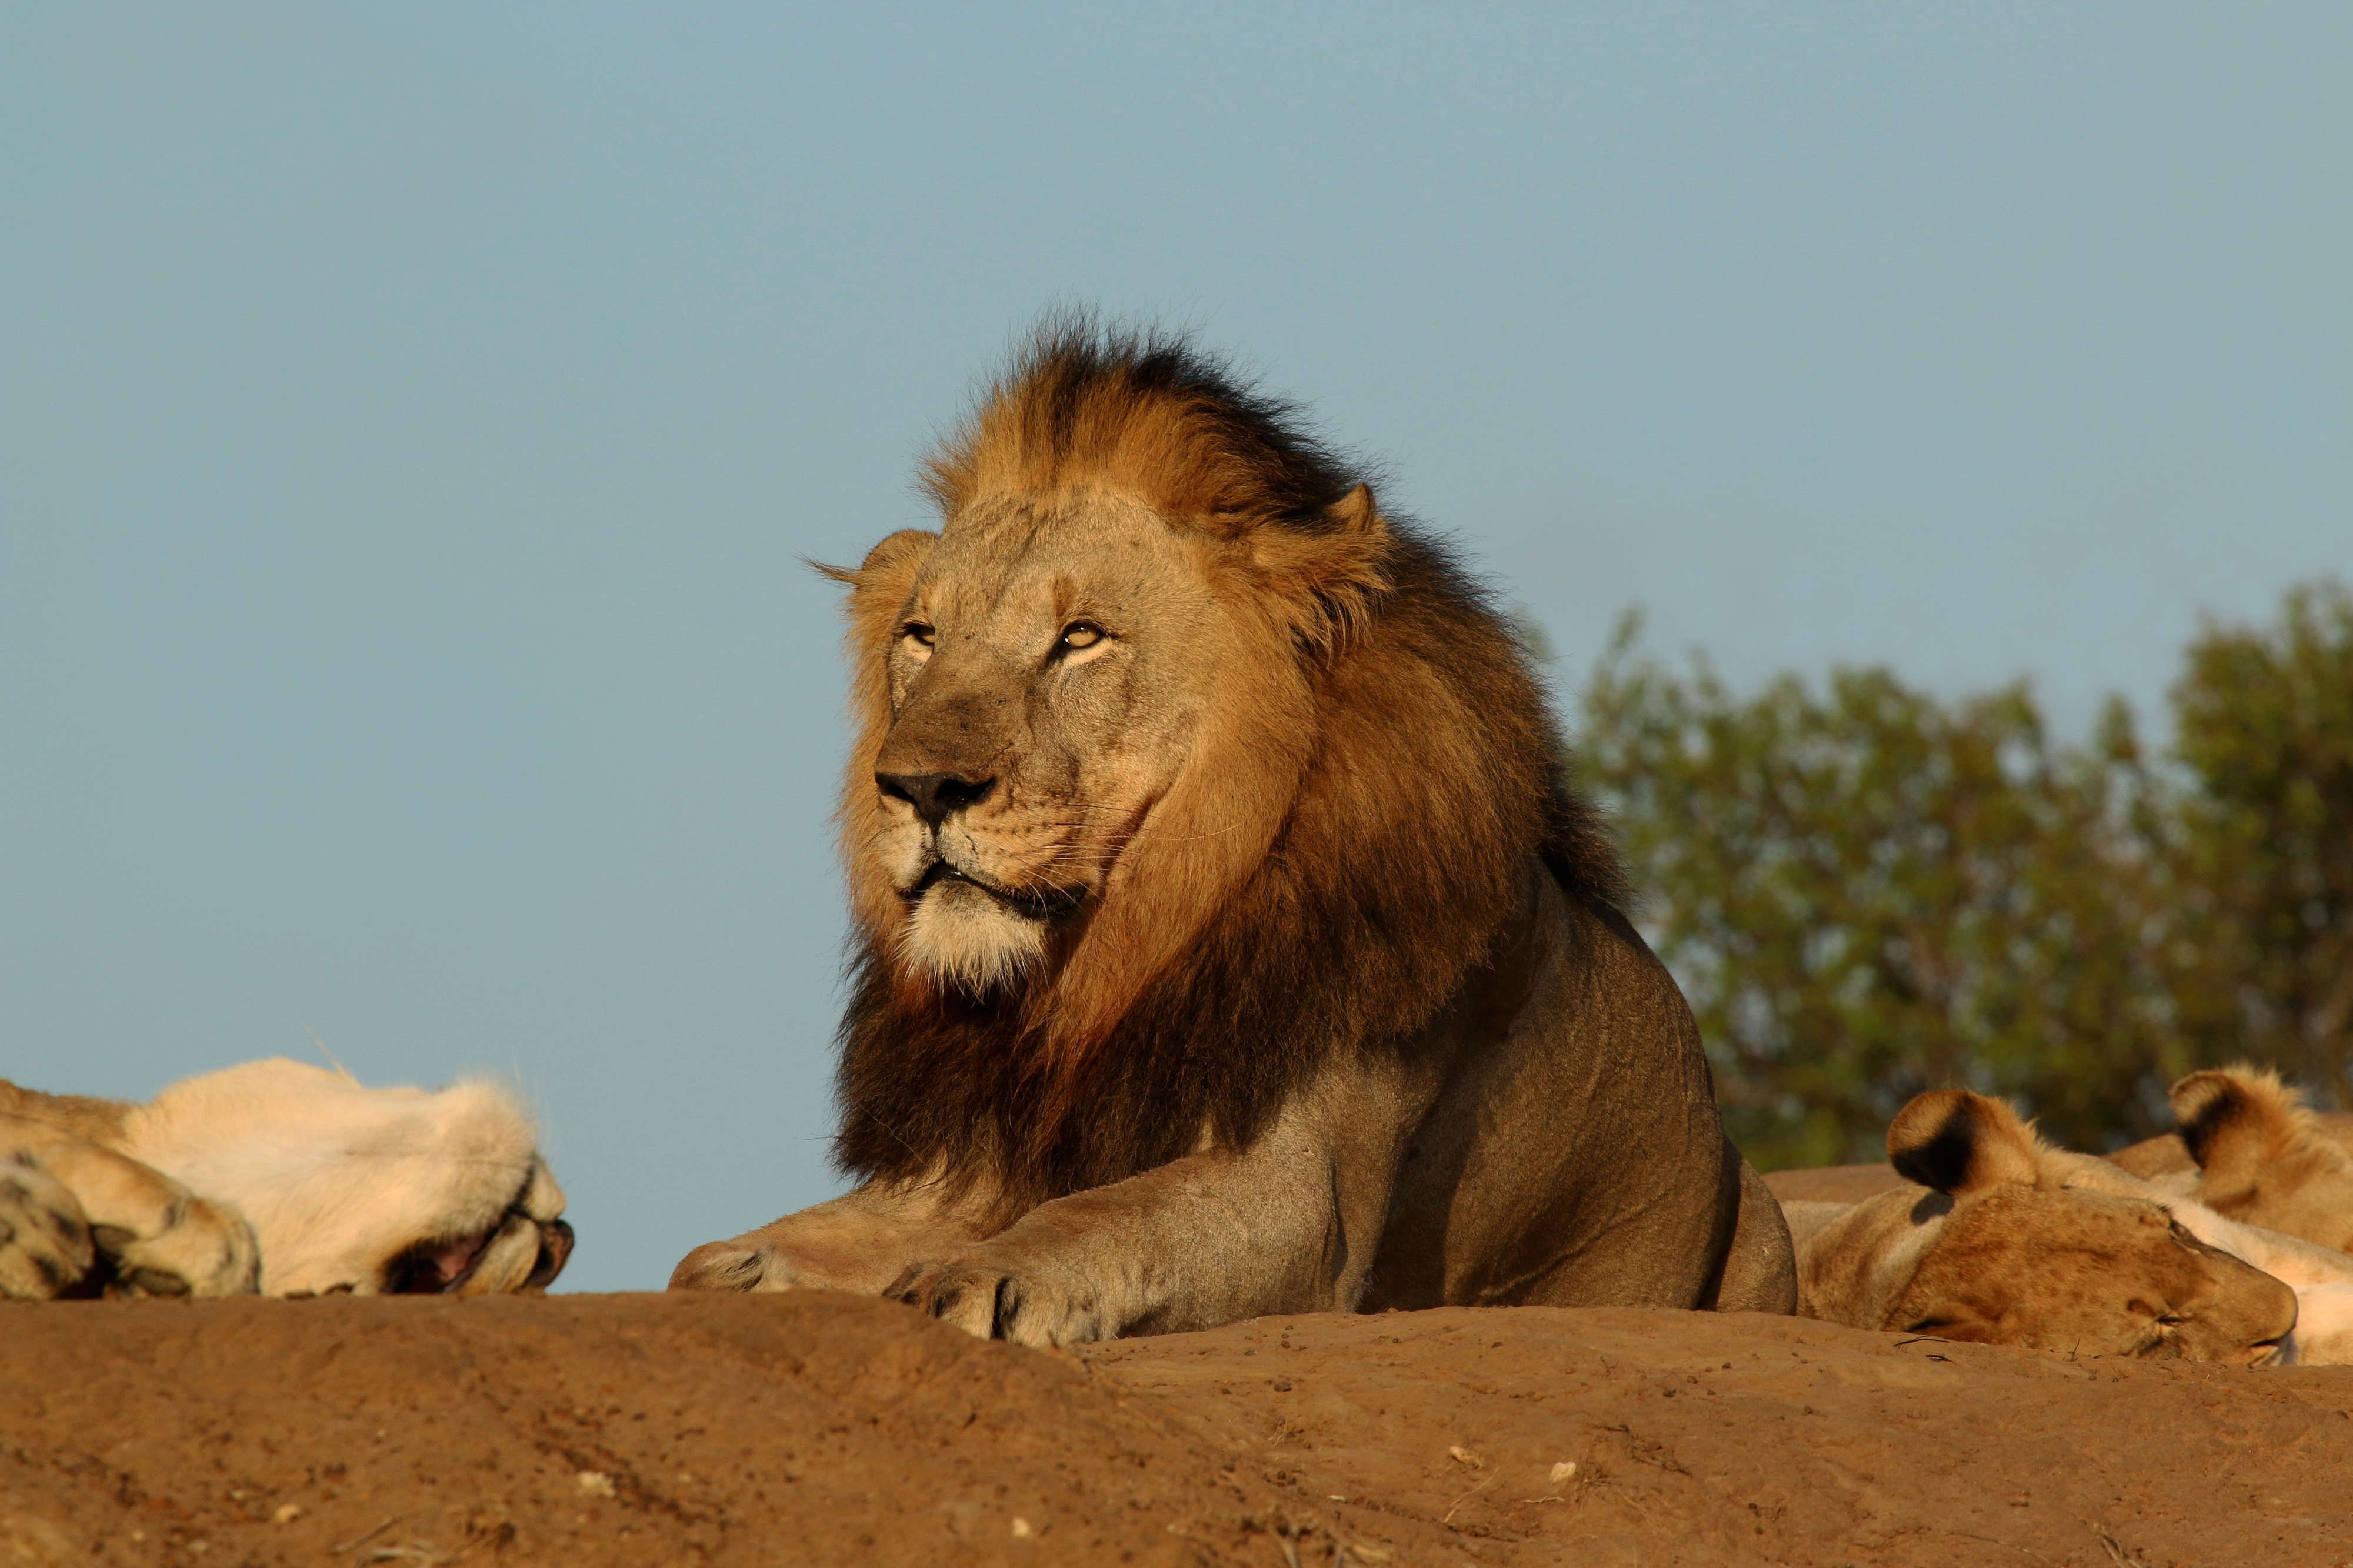 Kalahari lion (Panthera leo) male 6y